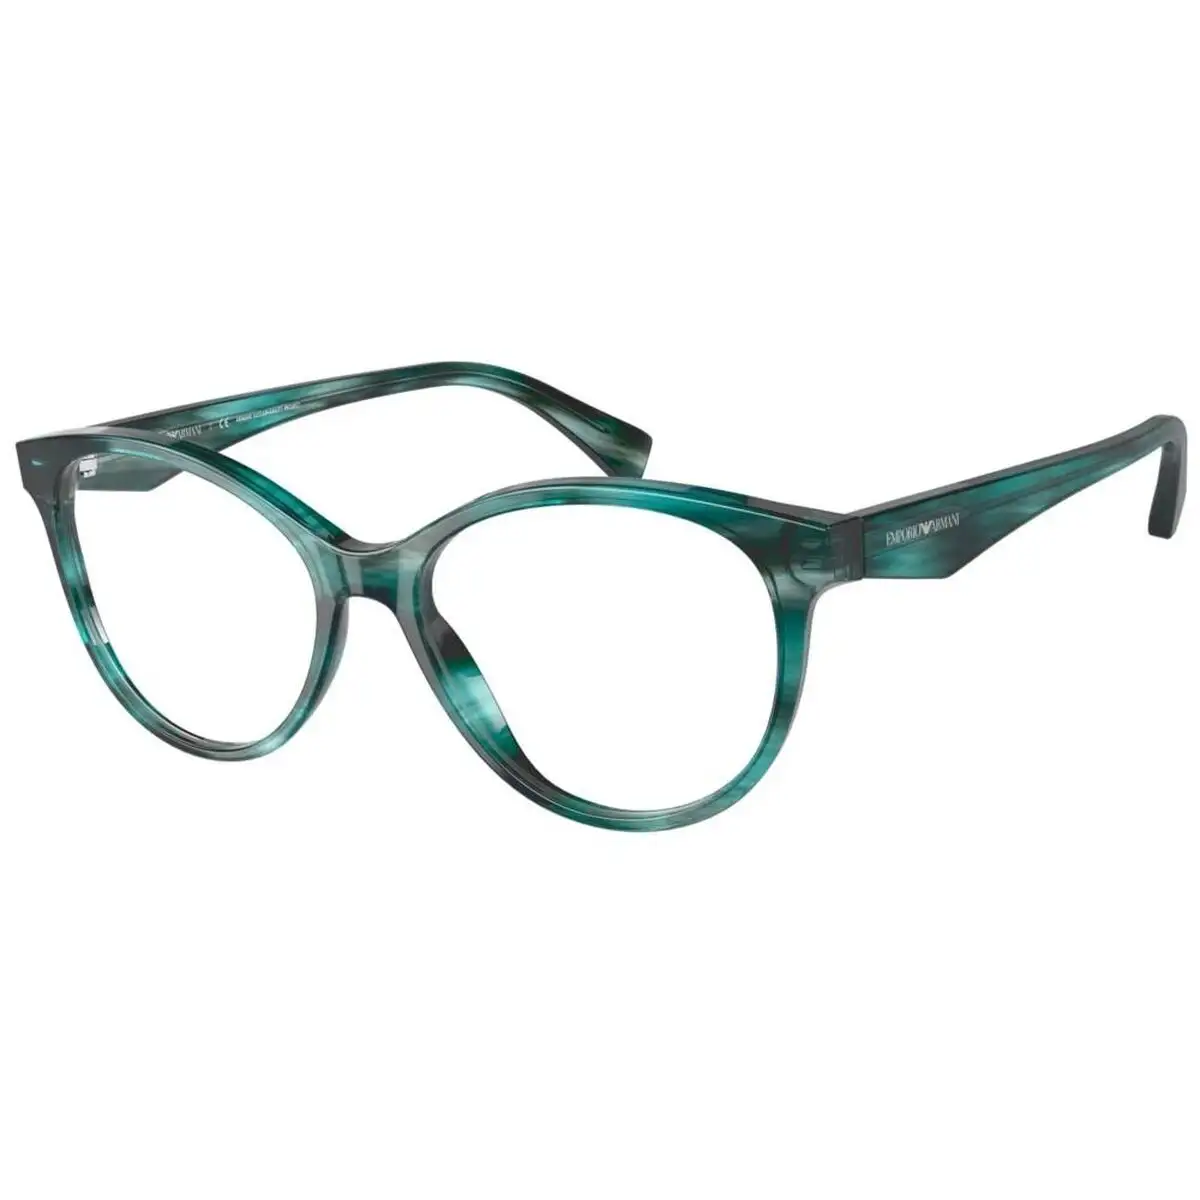 Monture de lunettes homme emporio armani ea 3180_1001. DIAYTAR SENEGAL - Là où Chaque Achat a du Sens. Explorez notre gamme et choisissez des produits qui racontent une histoire, votre histoire.